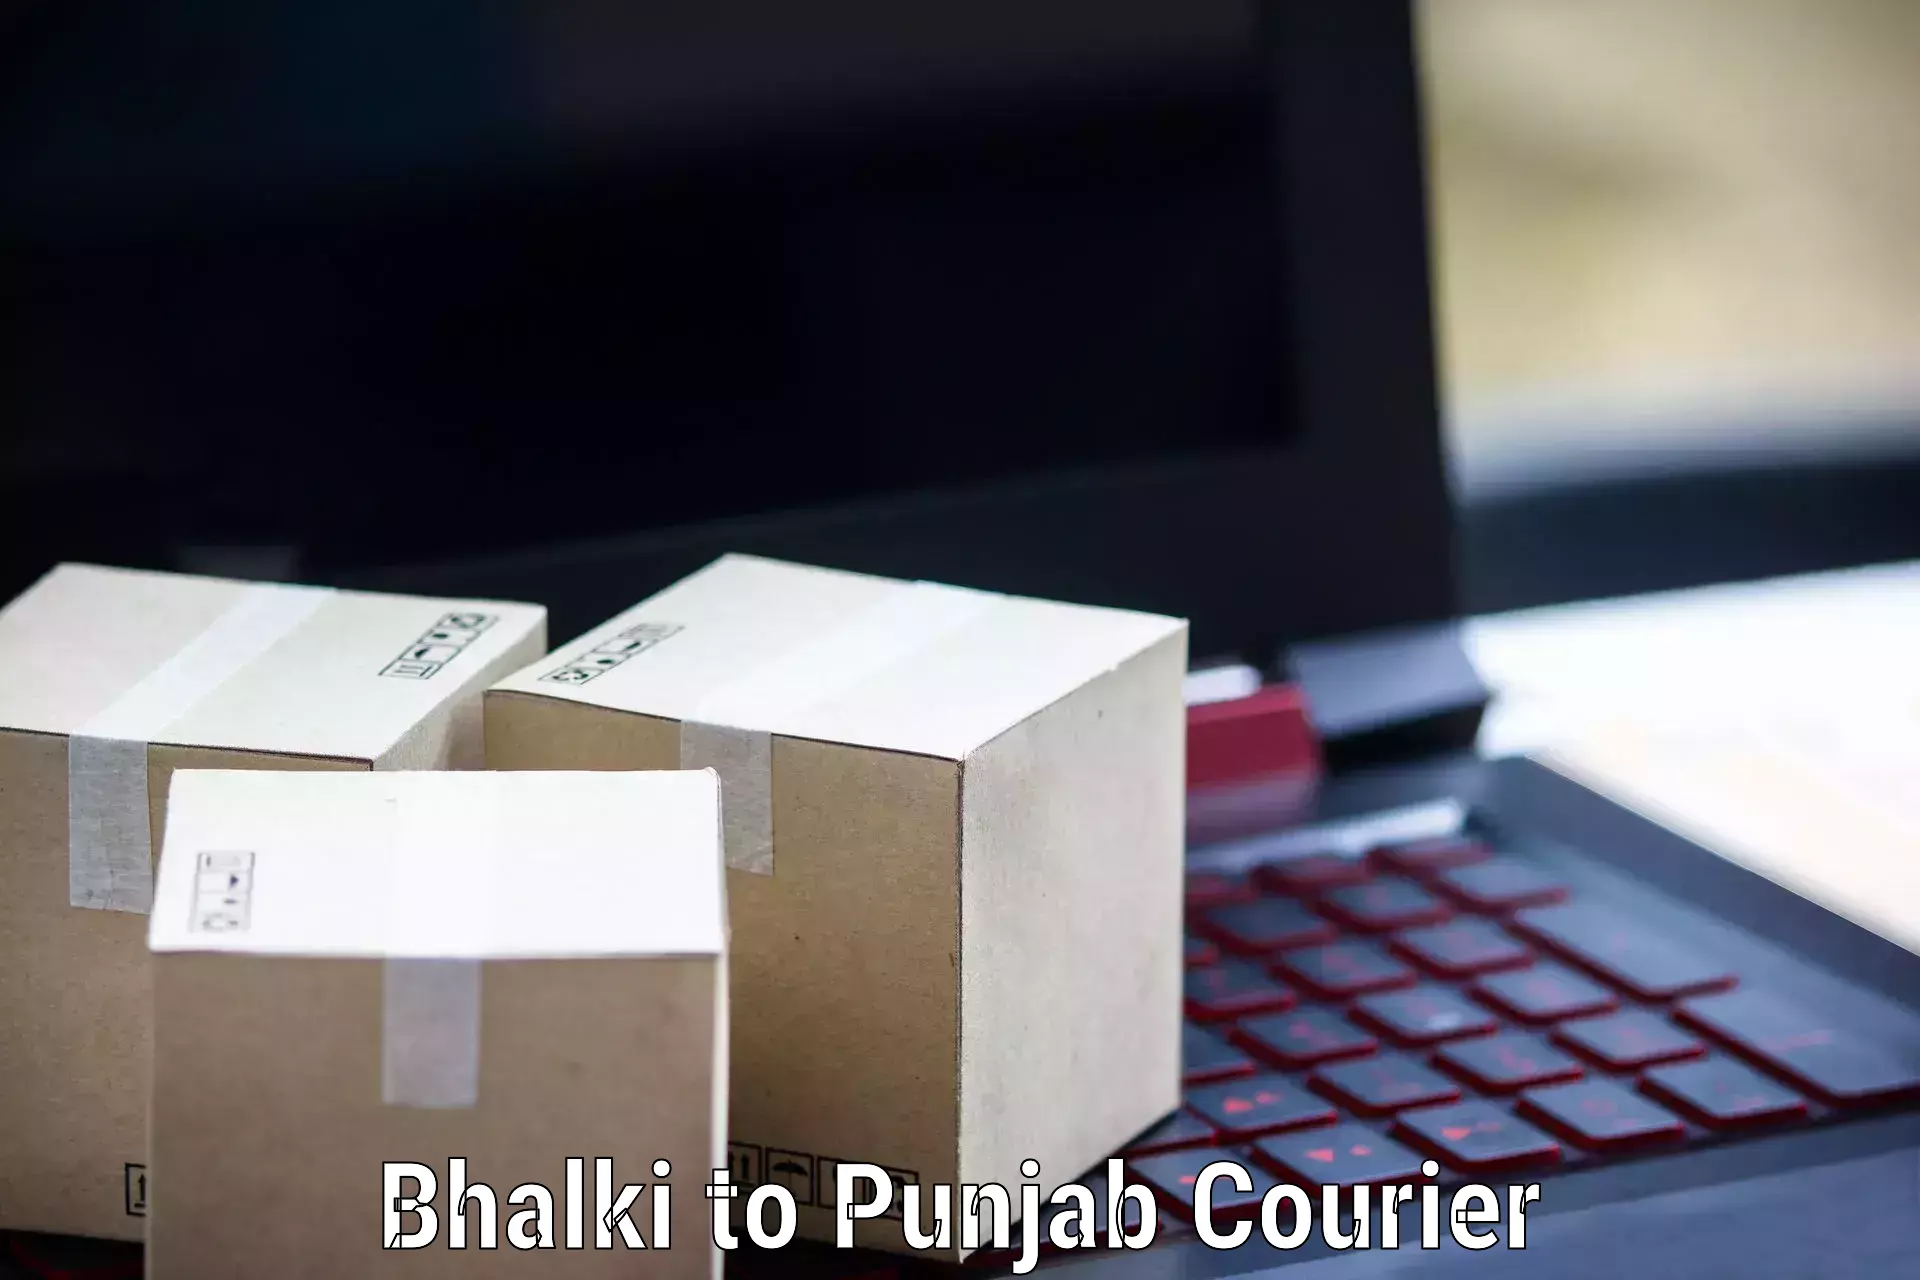 Urgent courier needs Bhalki to Machhiwara